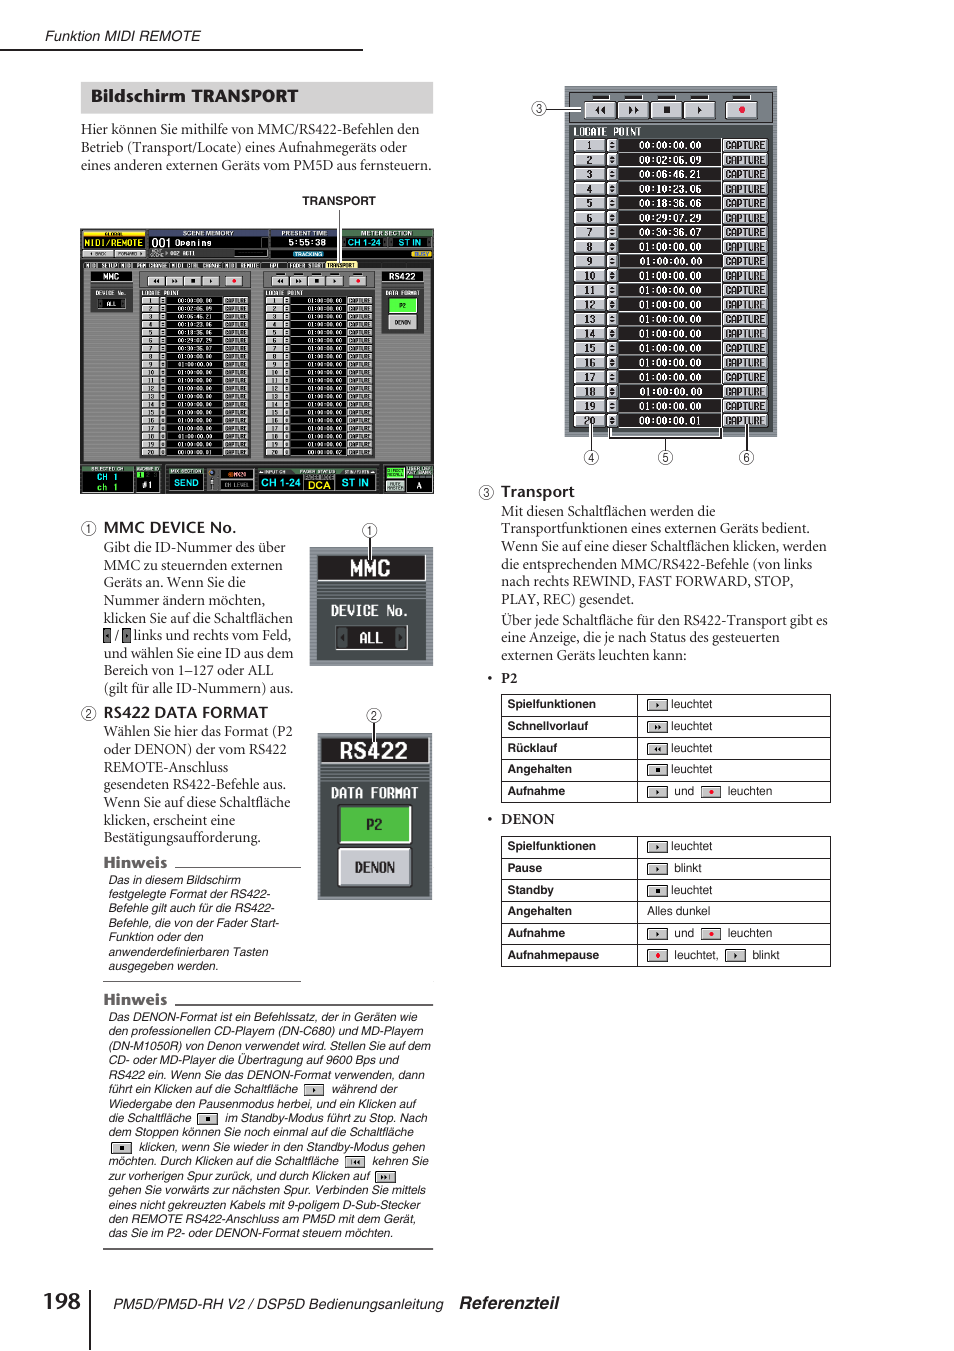 Bildschirm transport, Referenzteil | Yamaha PM5D-RH V2  DE Benutzerhandbuch | Seite 198 / 408